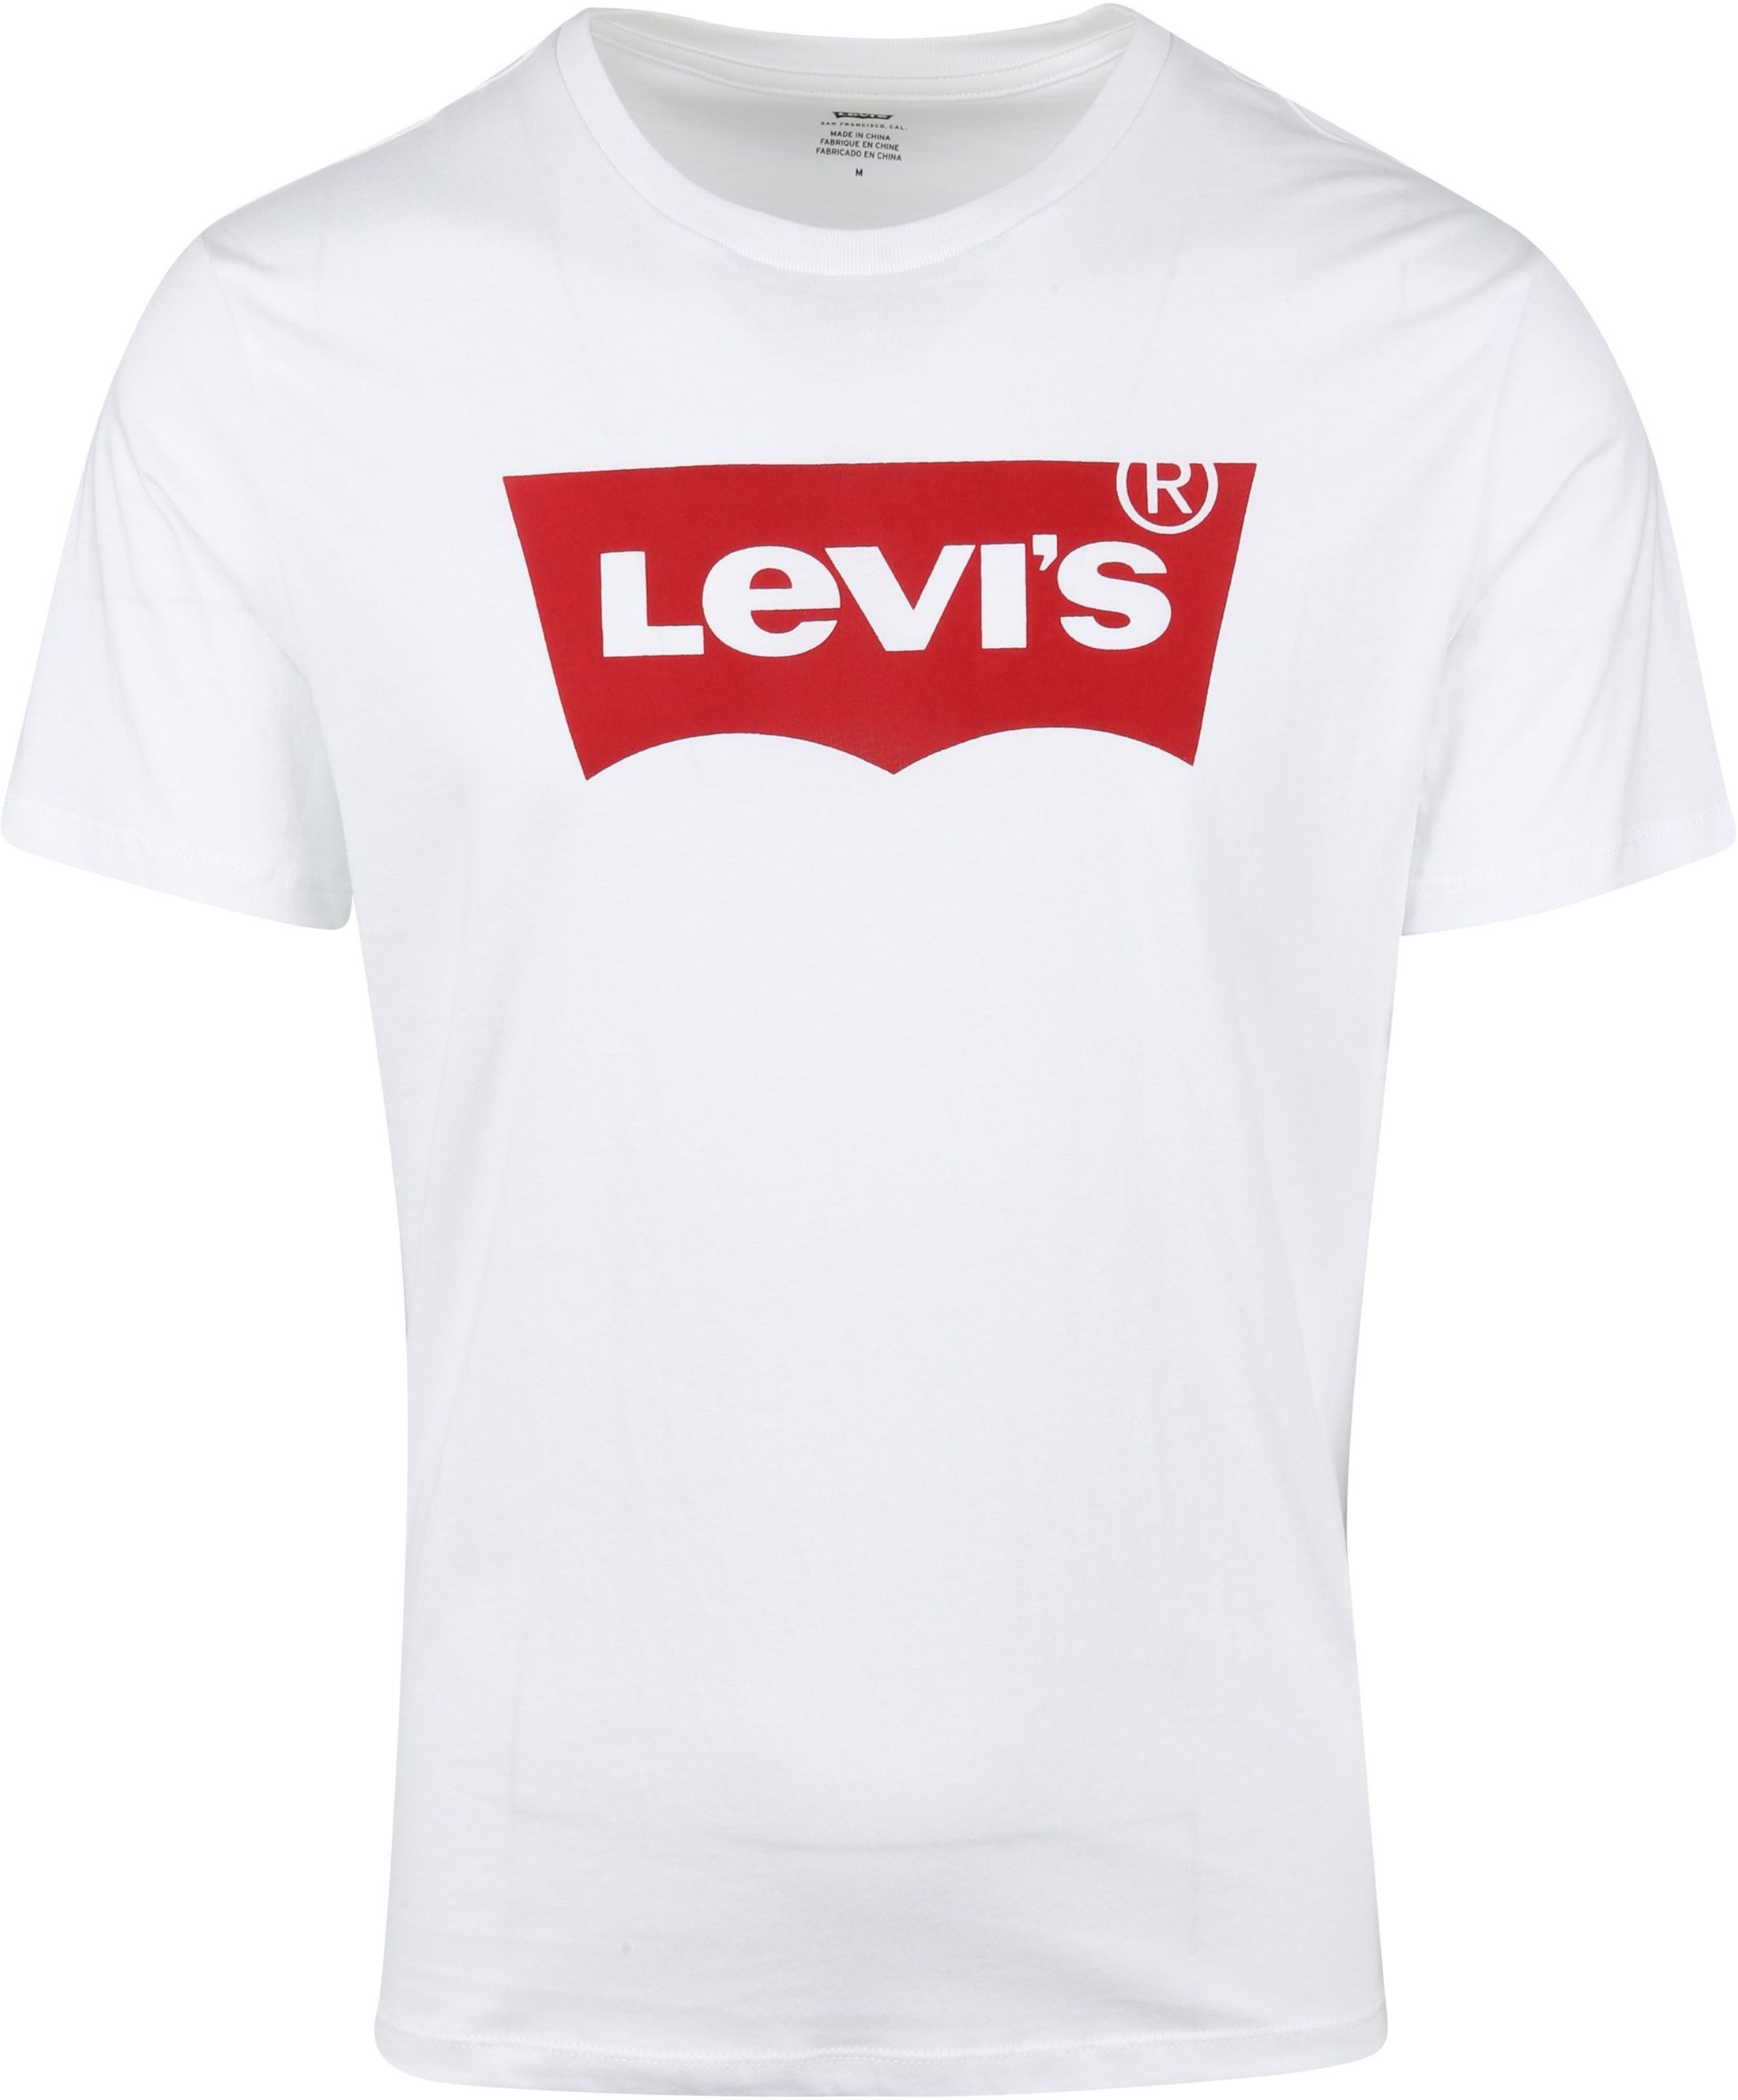 Levi's T-shirt Logo White size 3XL